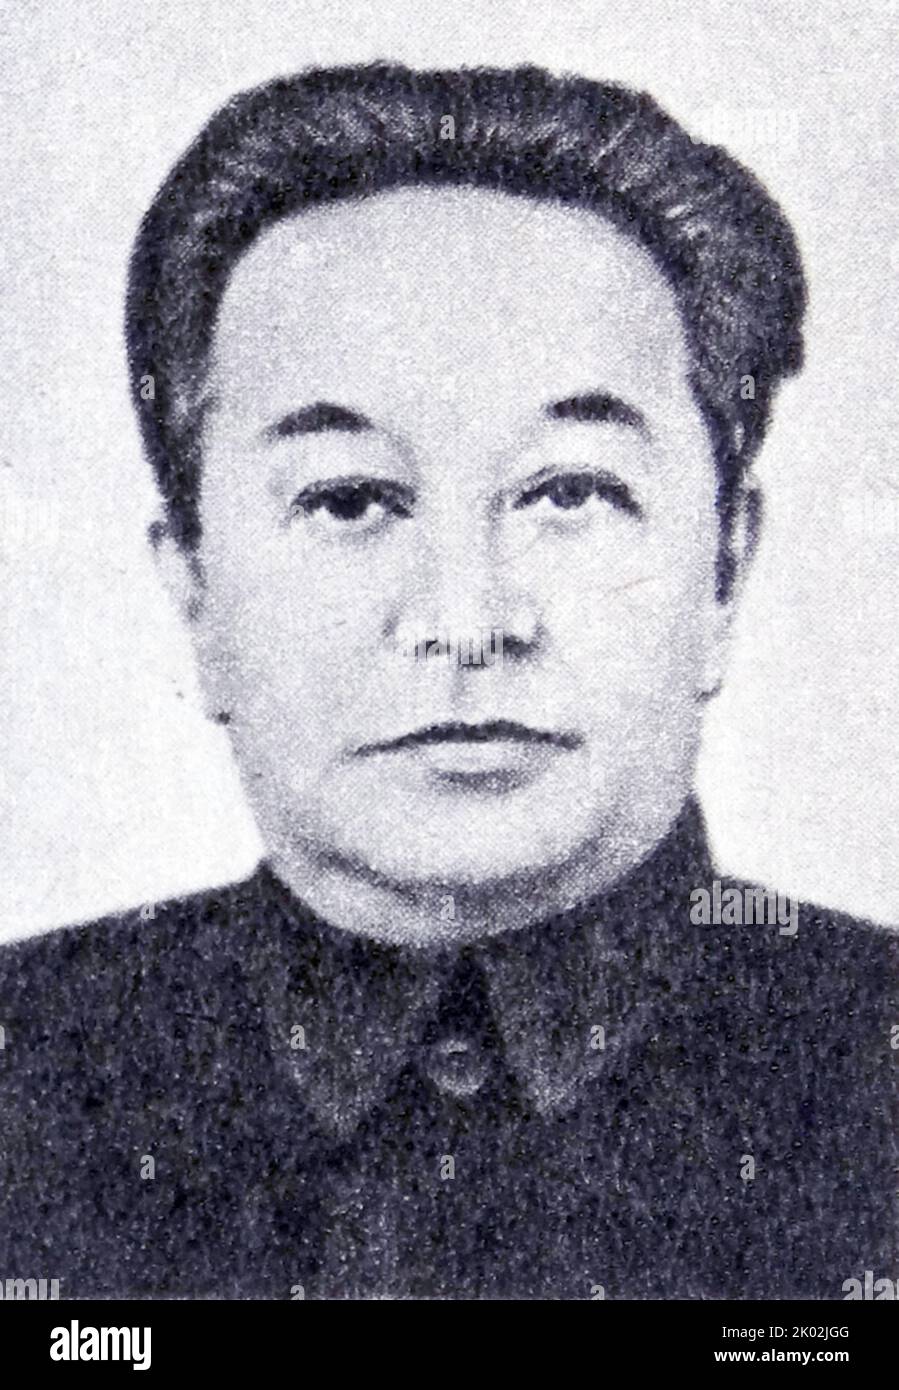 Wang Ming (1904 - 1974) dirigeant principal de l'ancien Parti communiste chinois (PCC) et chef d'œuvre du célèbre groupe bolcheviks de 28.[1] Wang était également un rival politique majeur de Mao Tsé-toung en 1930s, s'opposant à ce qu'il considérait comme l'écart nationaliste de Mao par rapport aux lignes marxistes-léninistes orthodoxes du Comintern. Banque D'Images